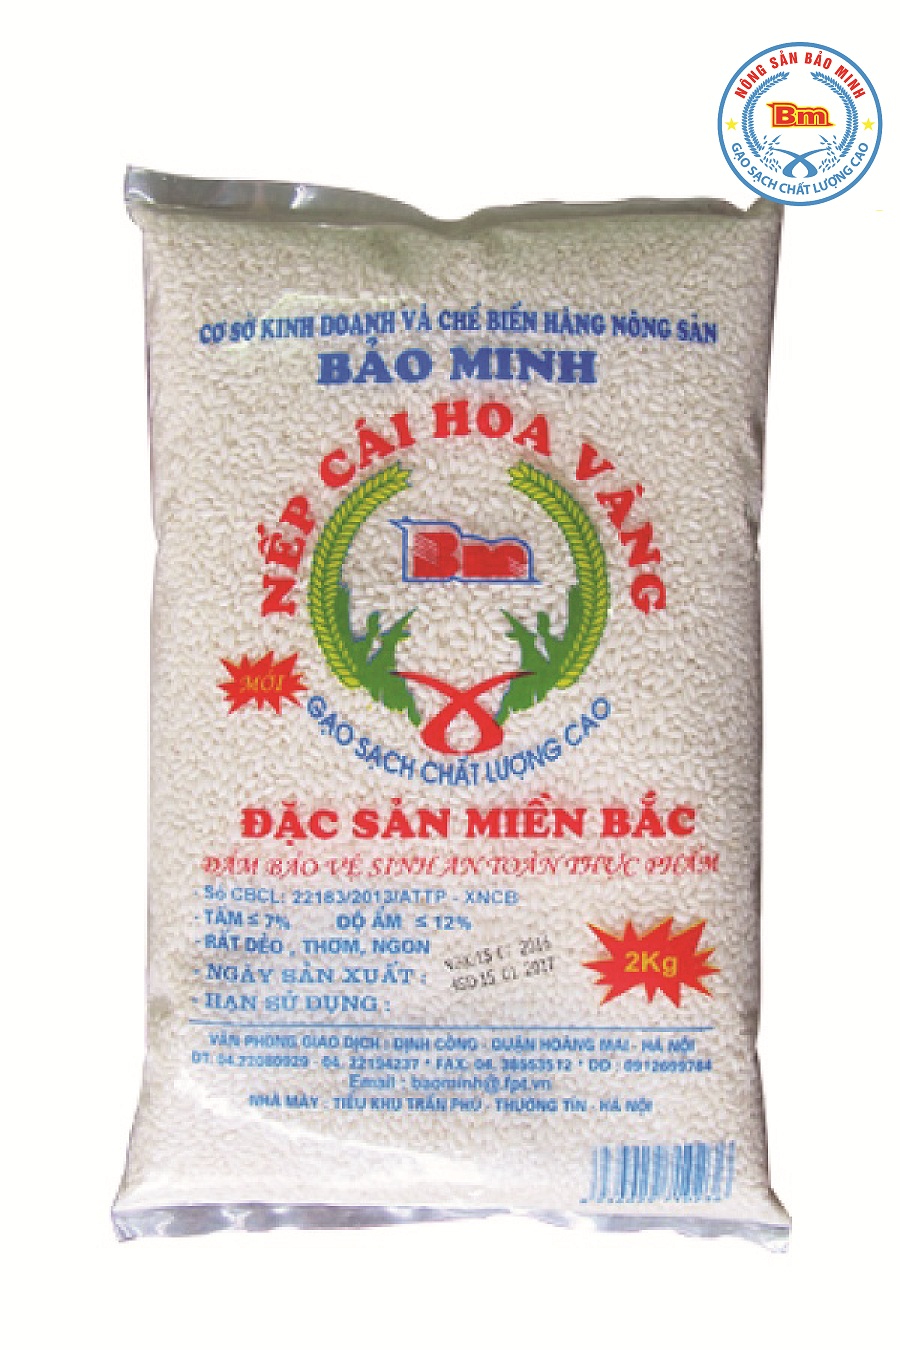 Gạo nếp cái Hoa Vàng - Gạo Bảo Minh - Công Ty CP Kinh Doanh Chế Biến Nông Sản Bảo Minh